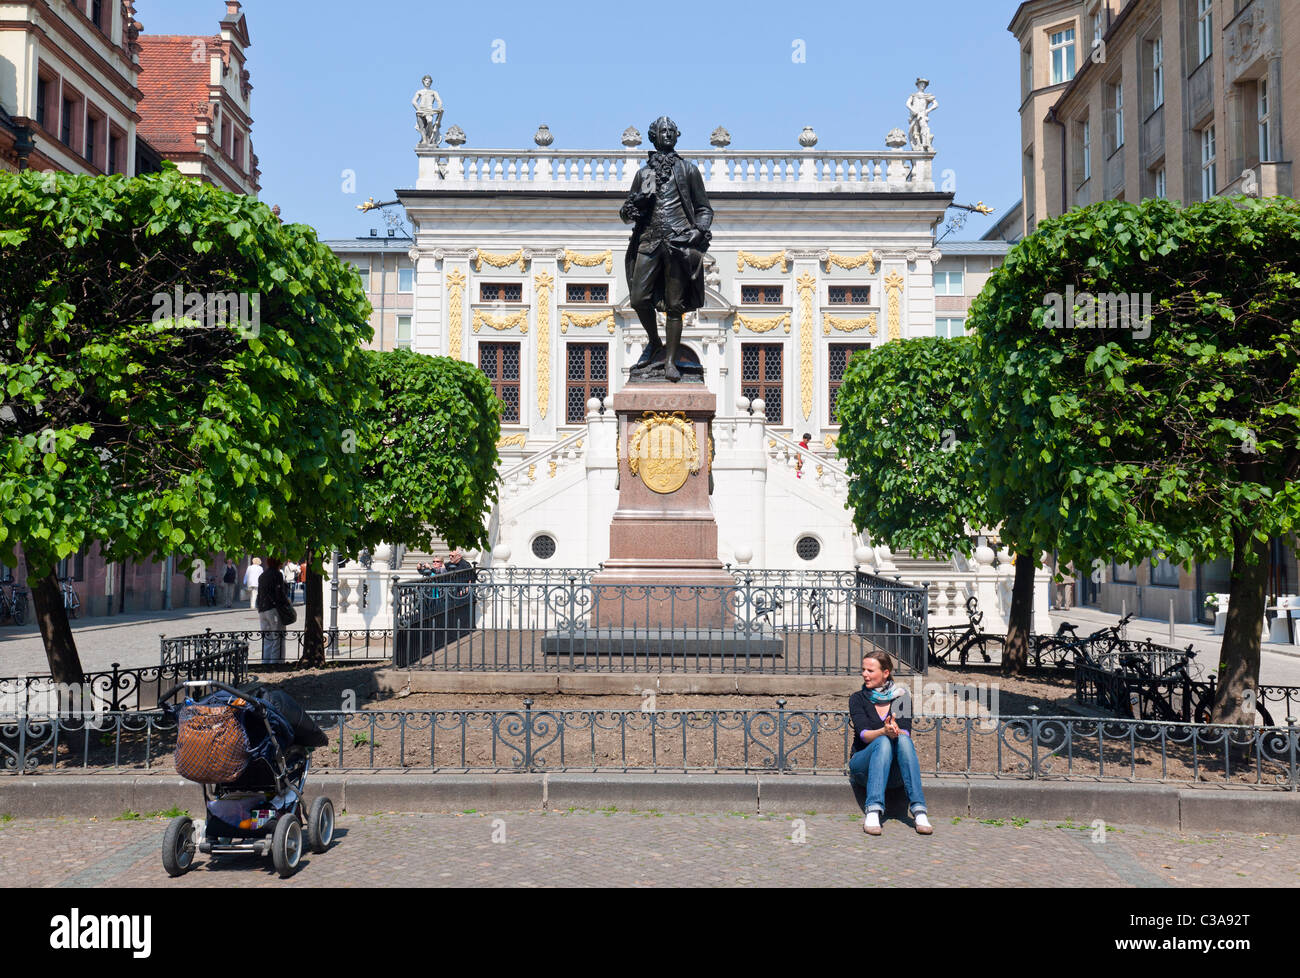 Alte Börse und Naschmarkt mit Goethe-Statue, Leipzig, Sachsen, Deutschland Stockfoto